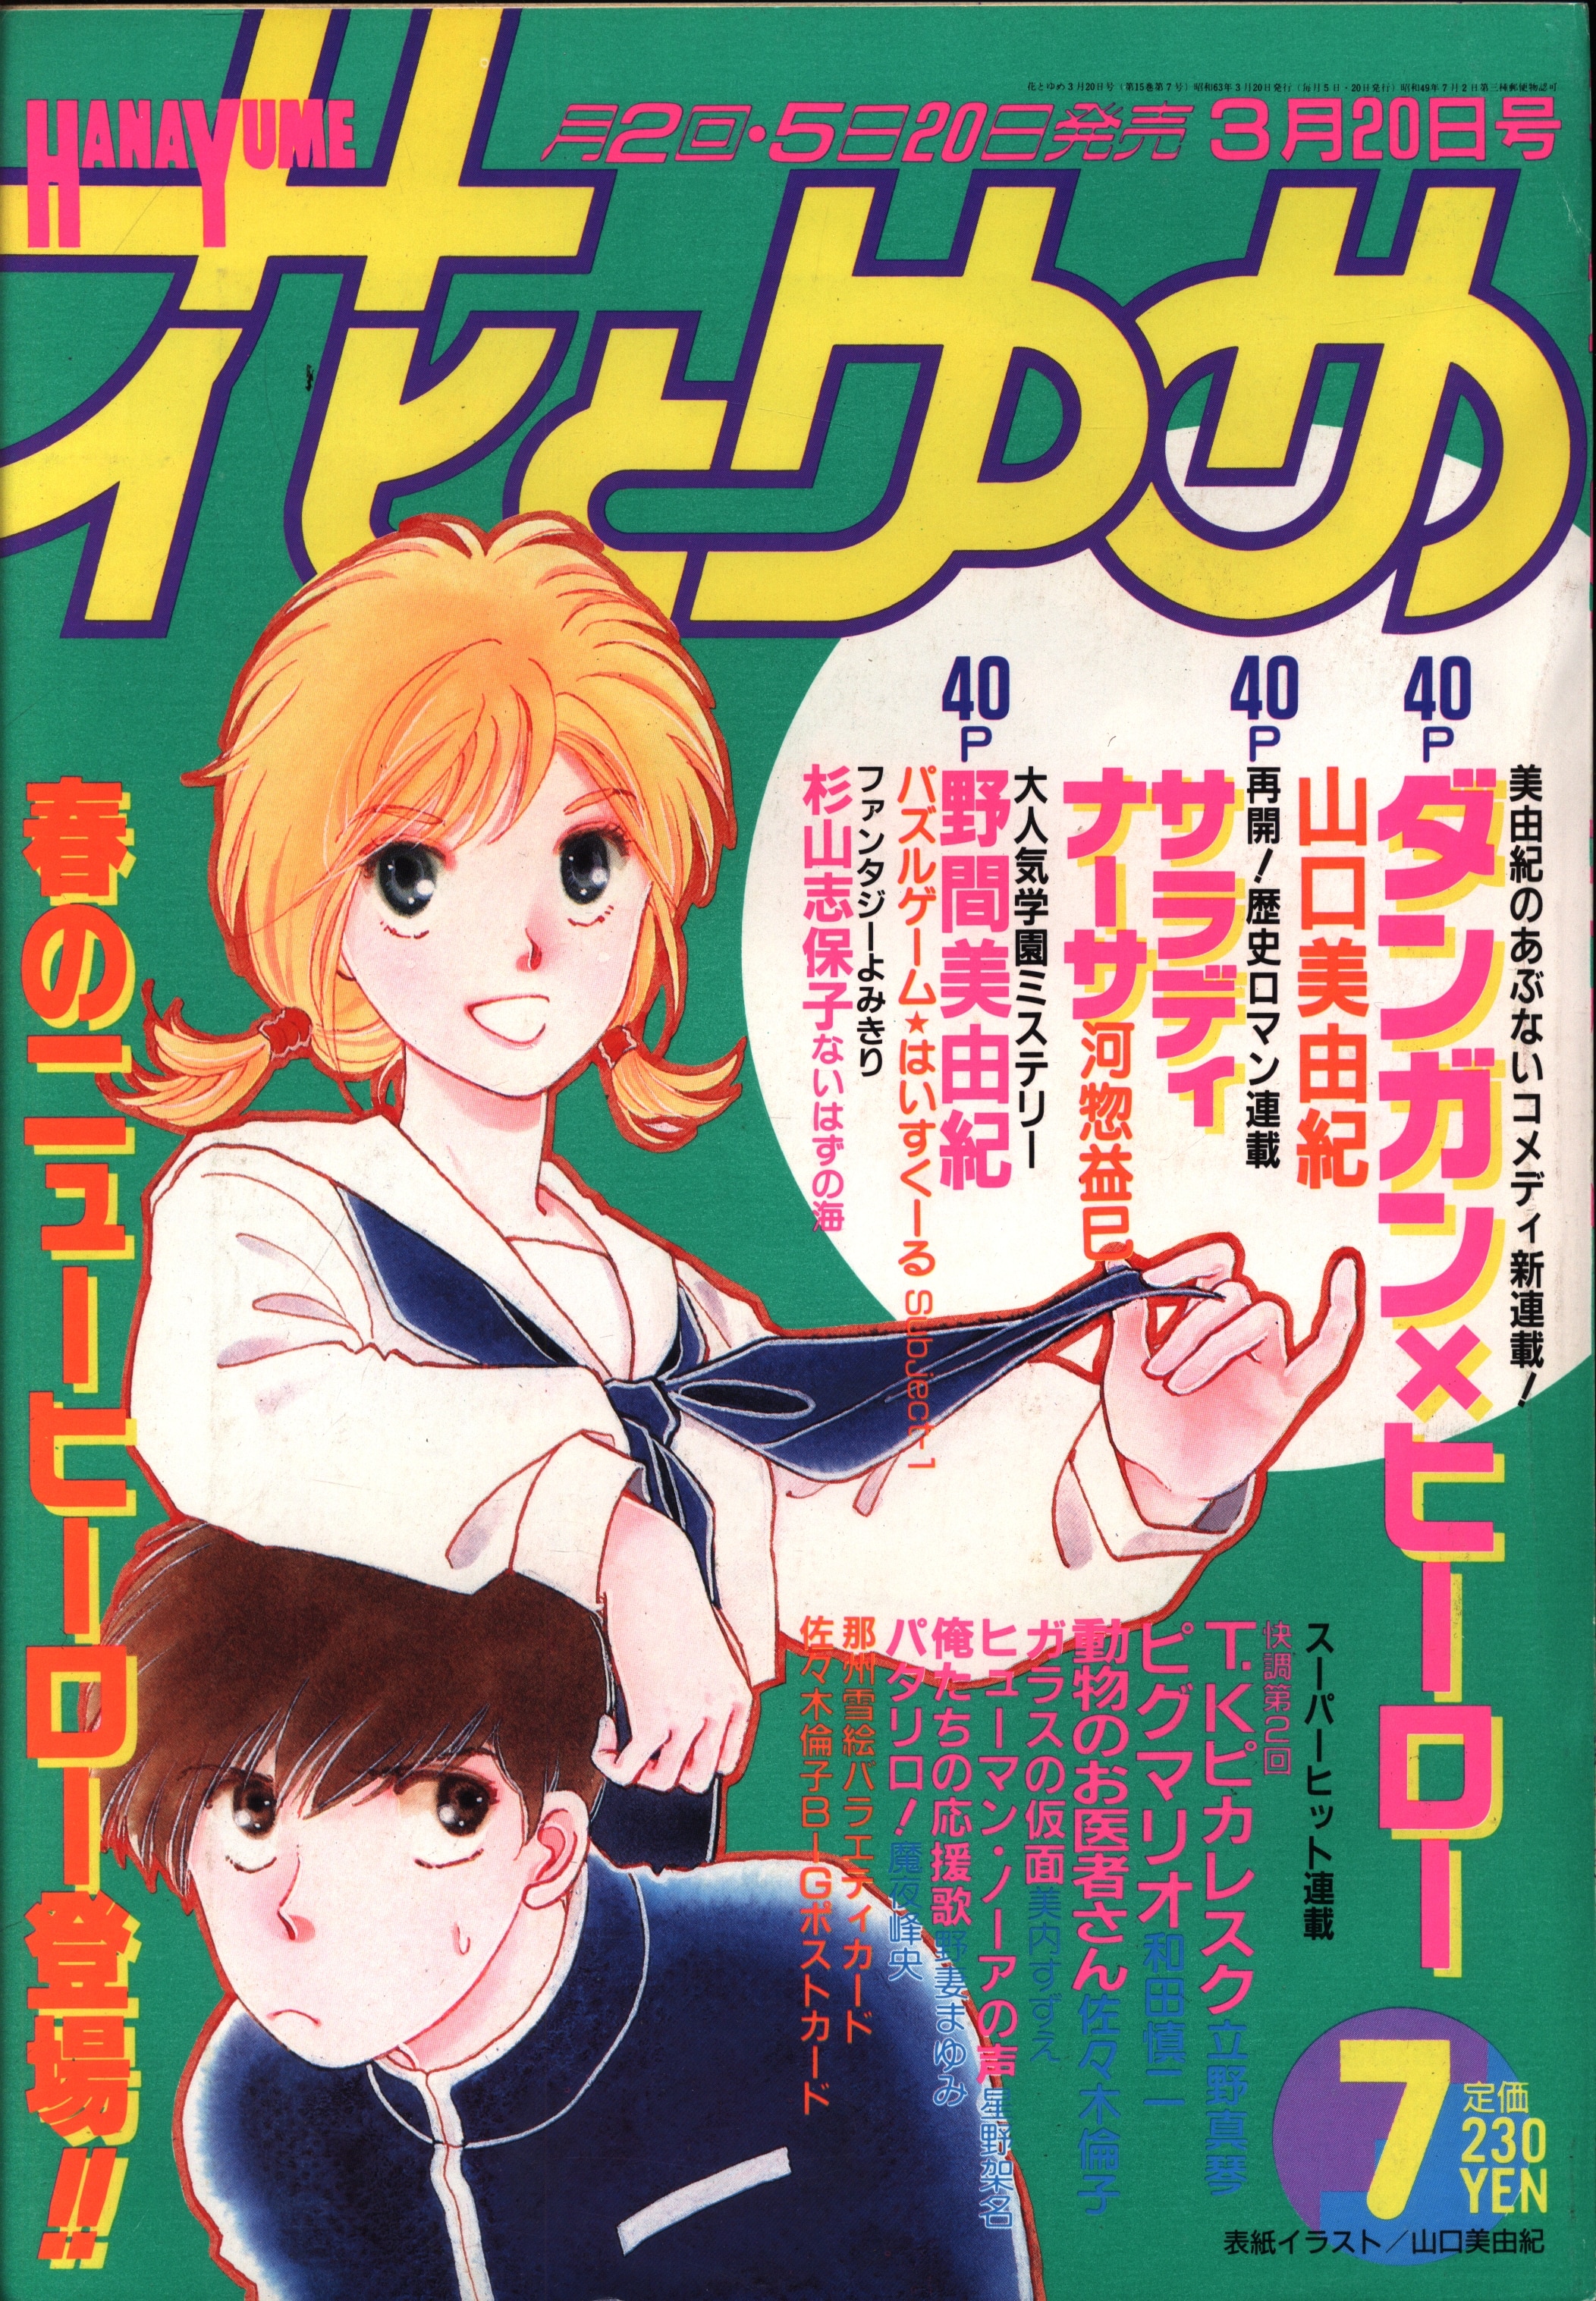 白泉社 1988年(昭和63年)の漫画雑誌 花とゆめ1988年(昭和63年)07号 ...